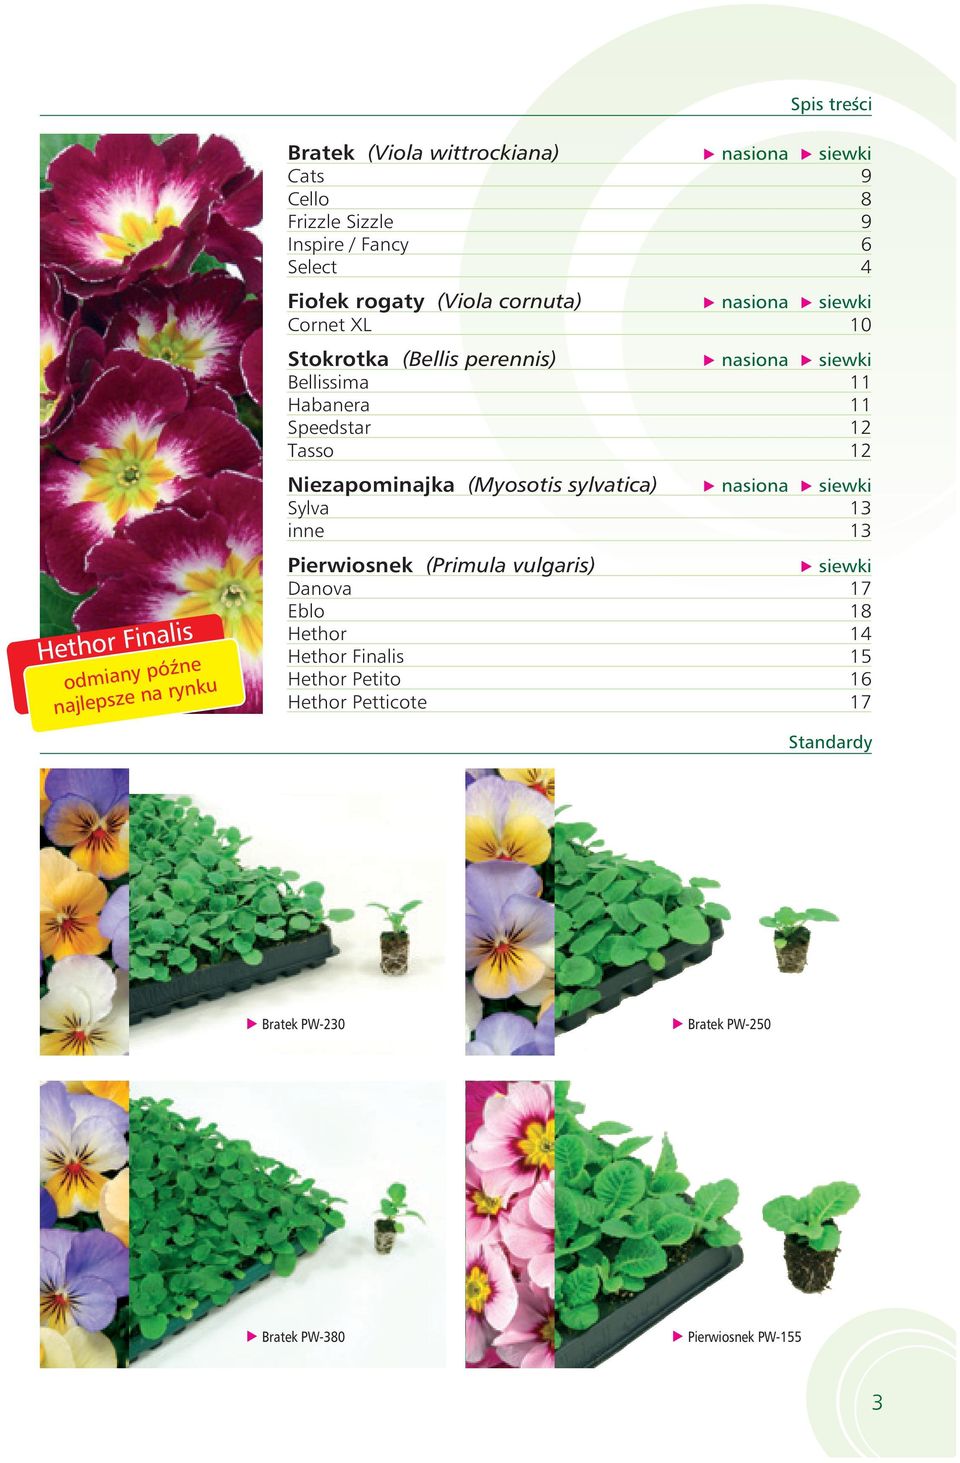 (Myosotis sylvatica) nasiona siewki Sylva 13 inne 13 Hethor Finalis odmiany późne najlepsze na rynku Pierwiosnek (Primula vulgaris) siewki